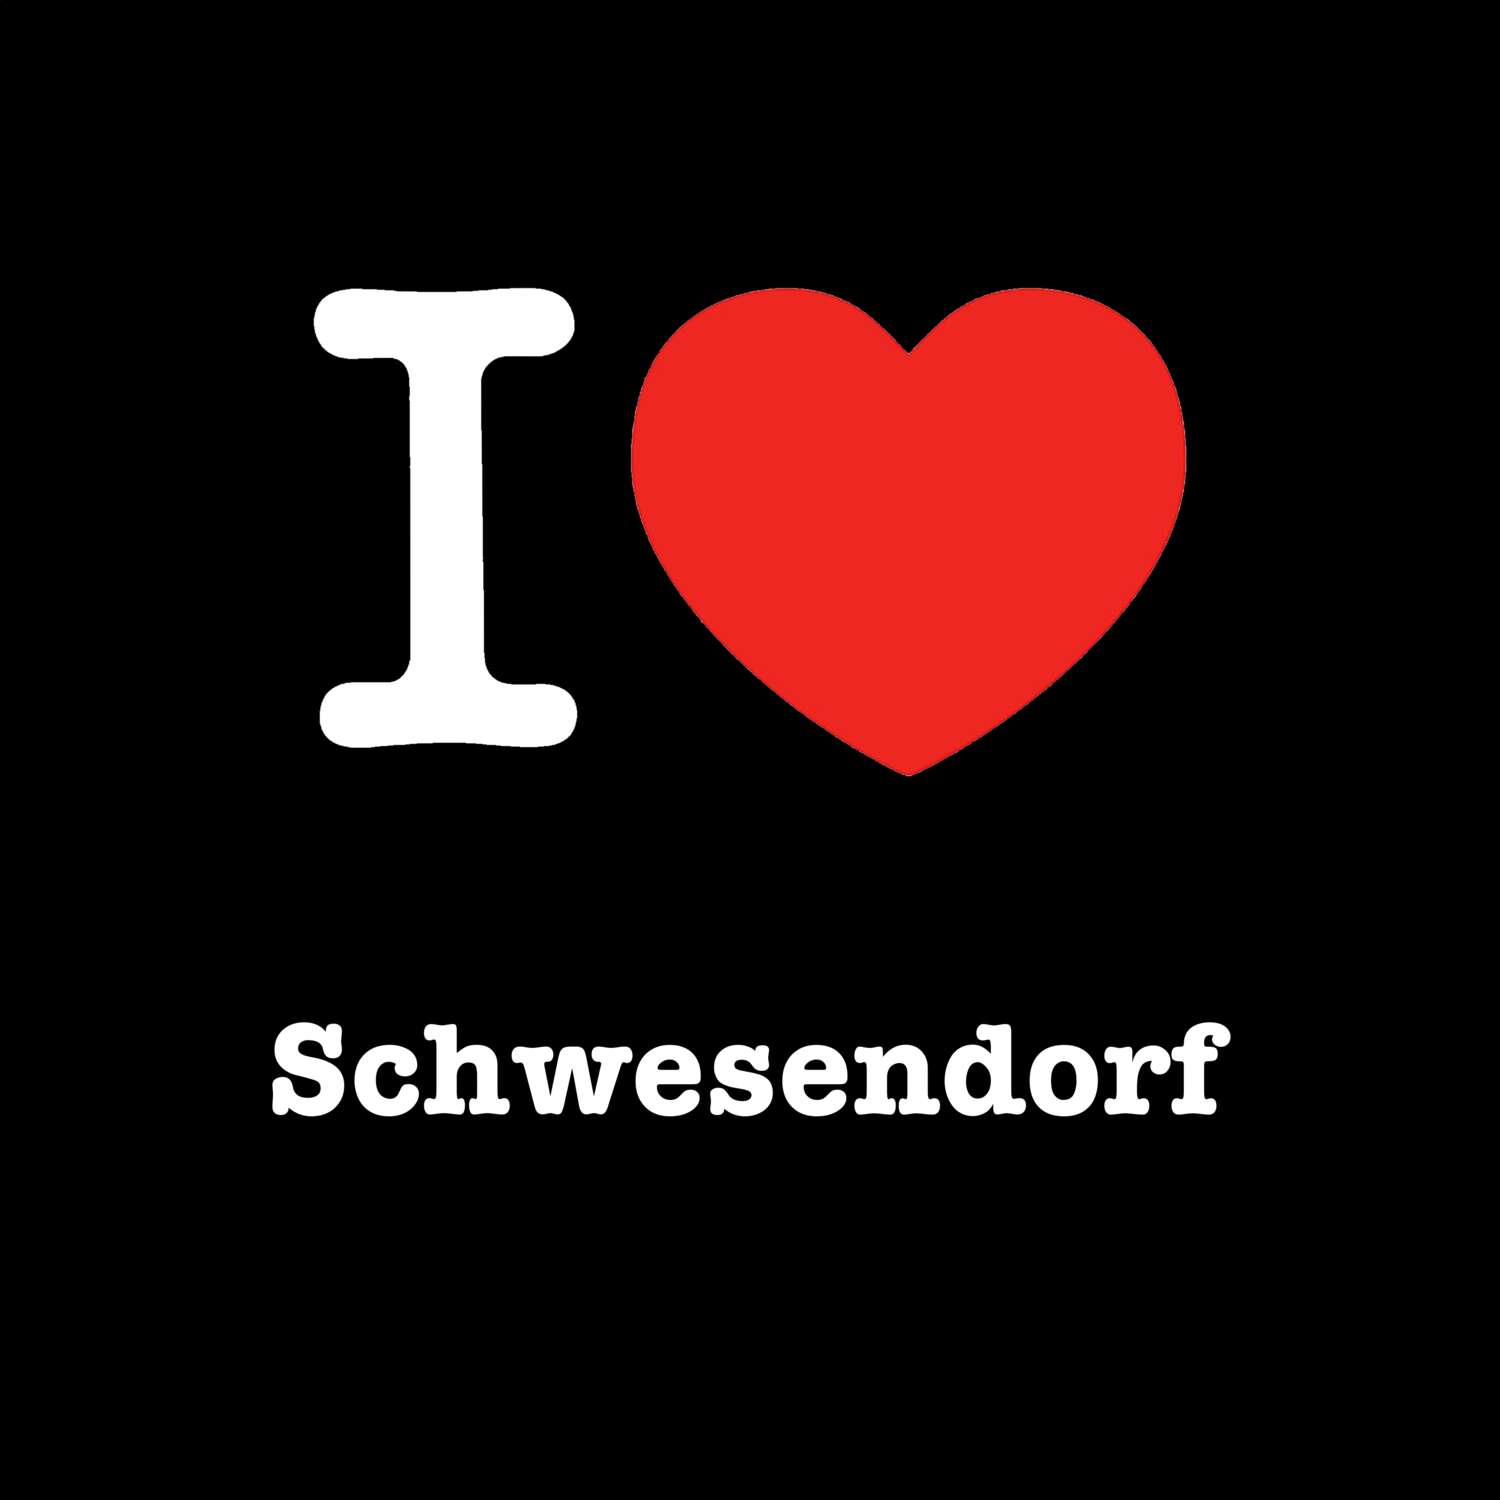 Schwesendorf T-Shirt »I love«